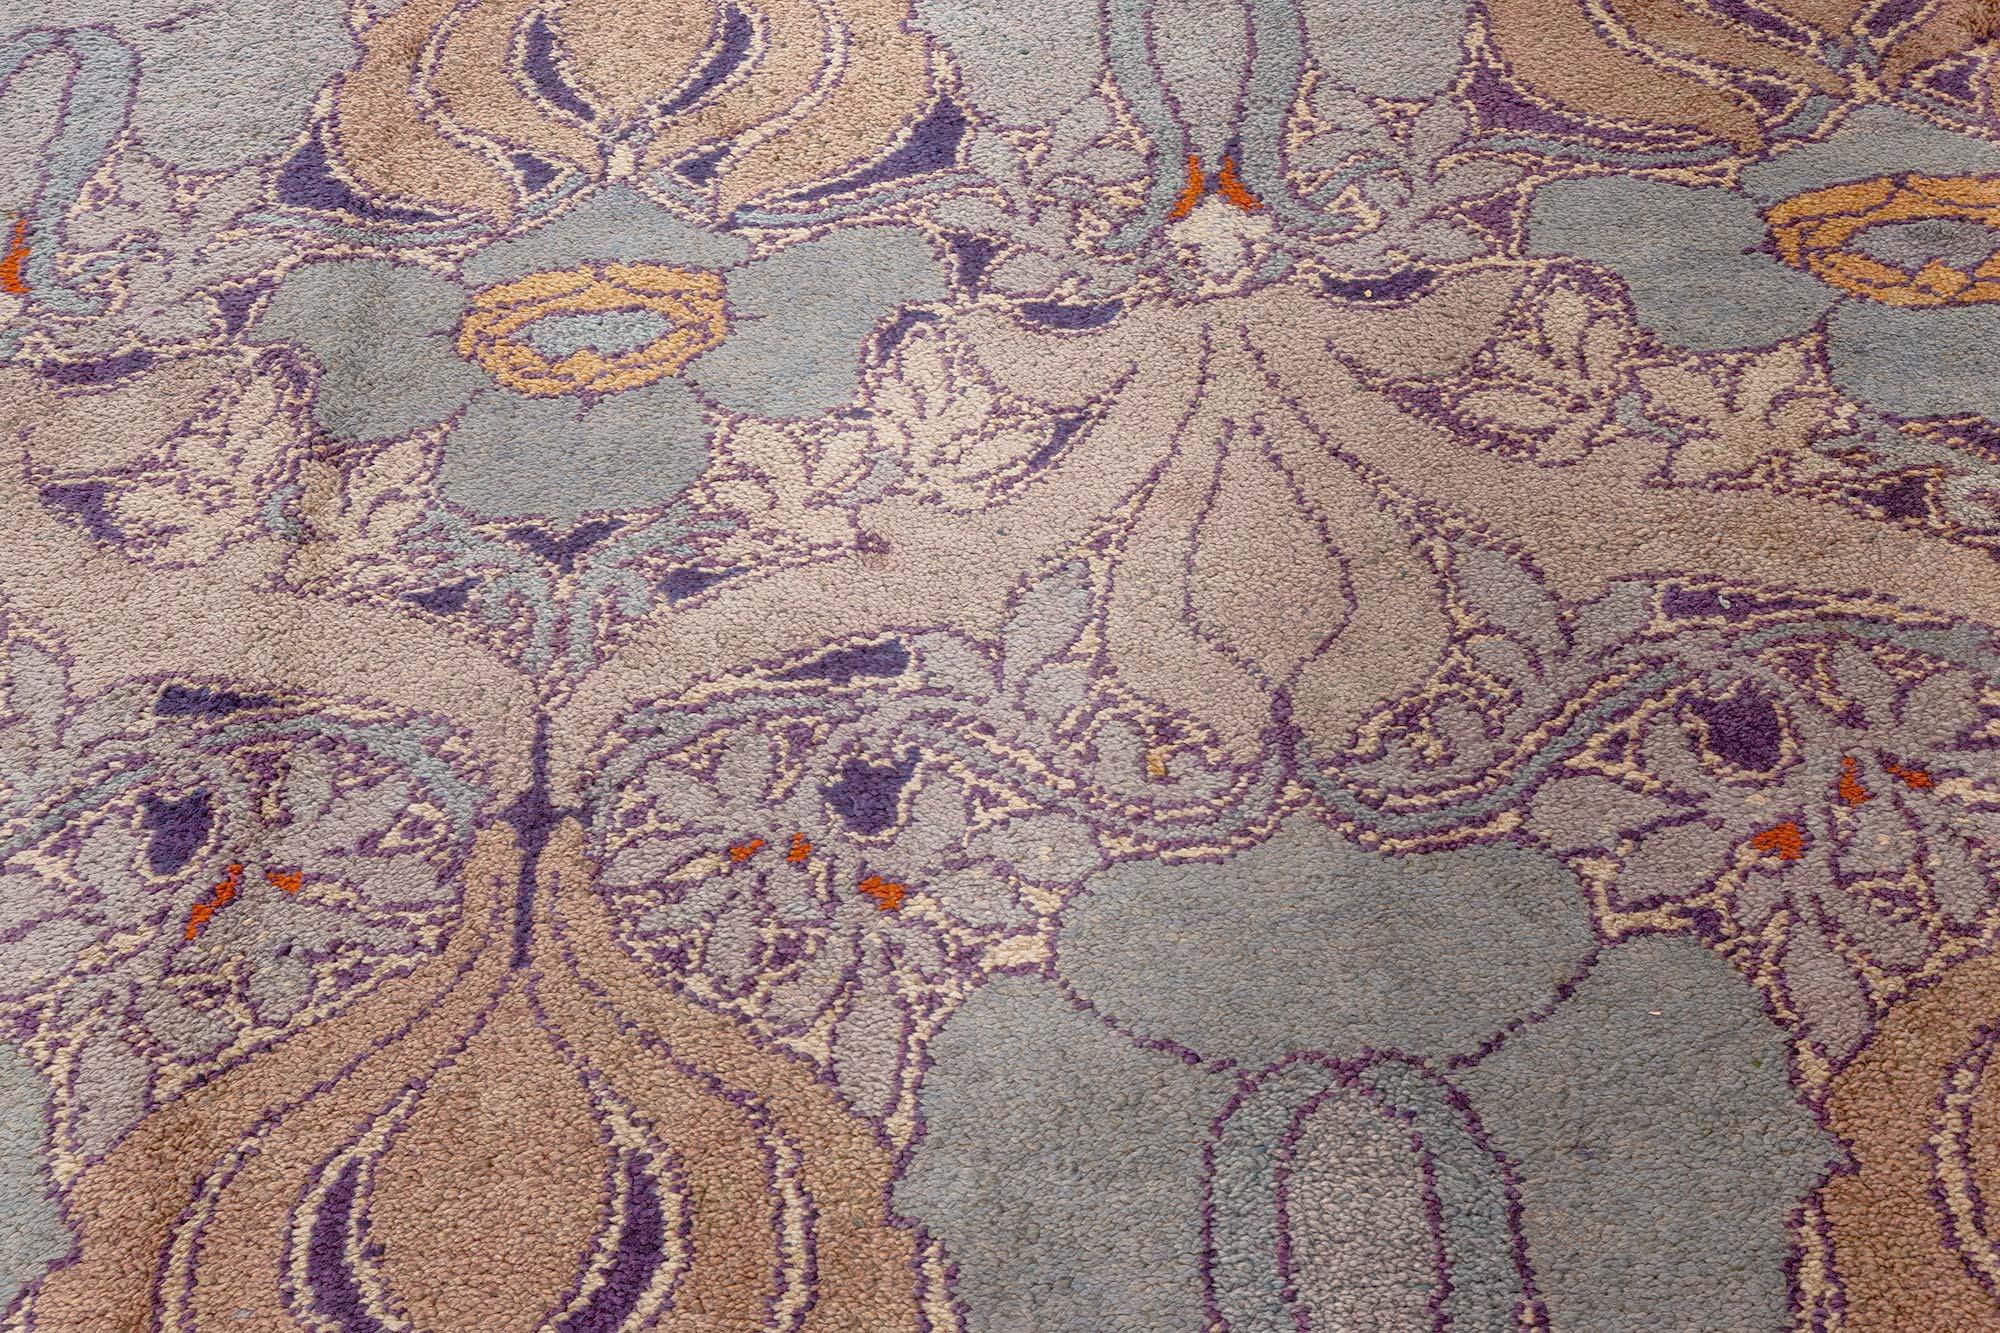 Arts and Crafts-Teppich entworfen von C.F.A. Voysey Donnemara
Größe: 13'7